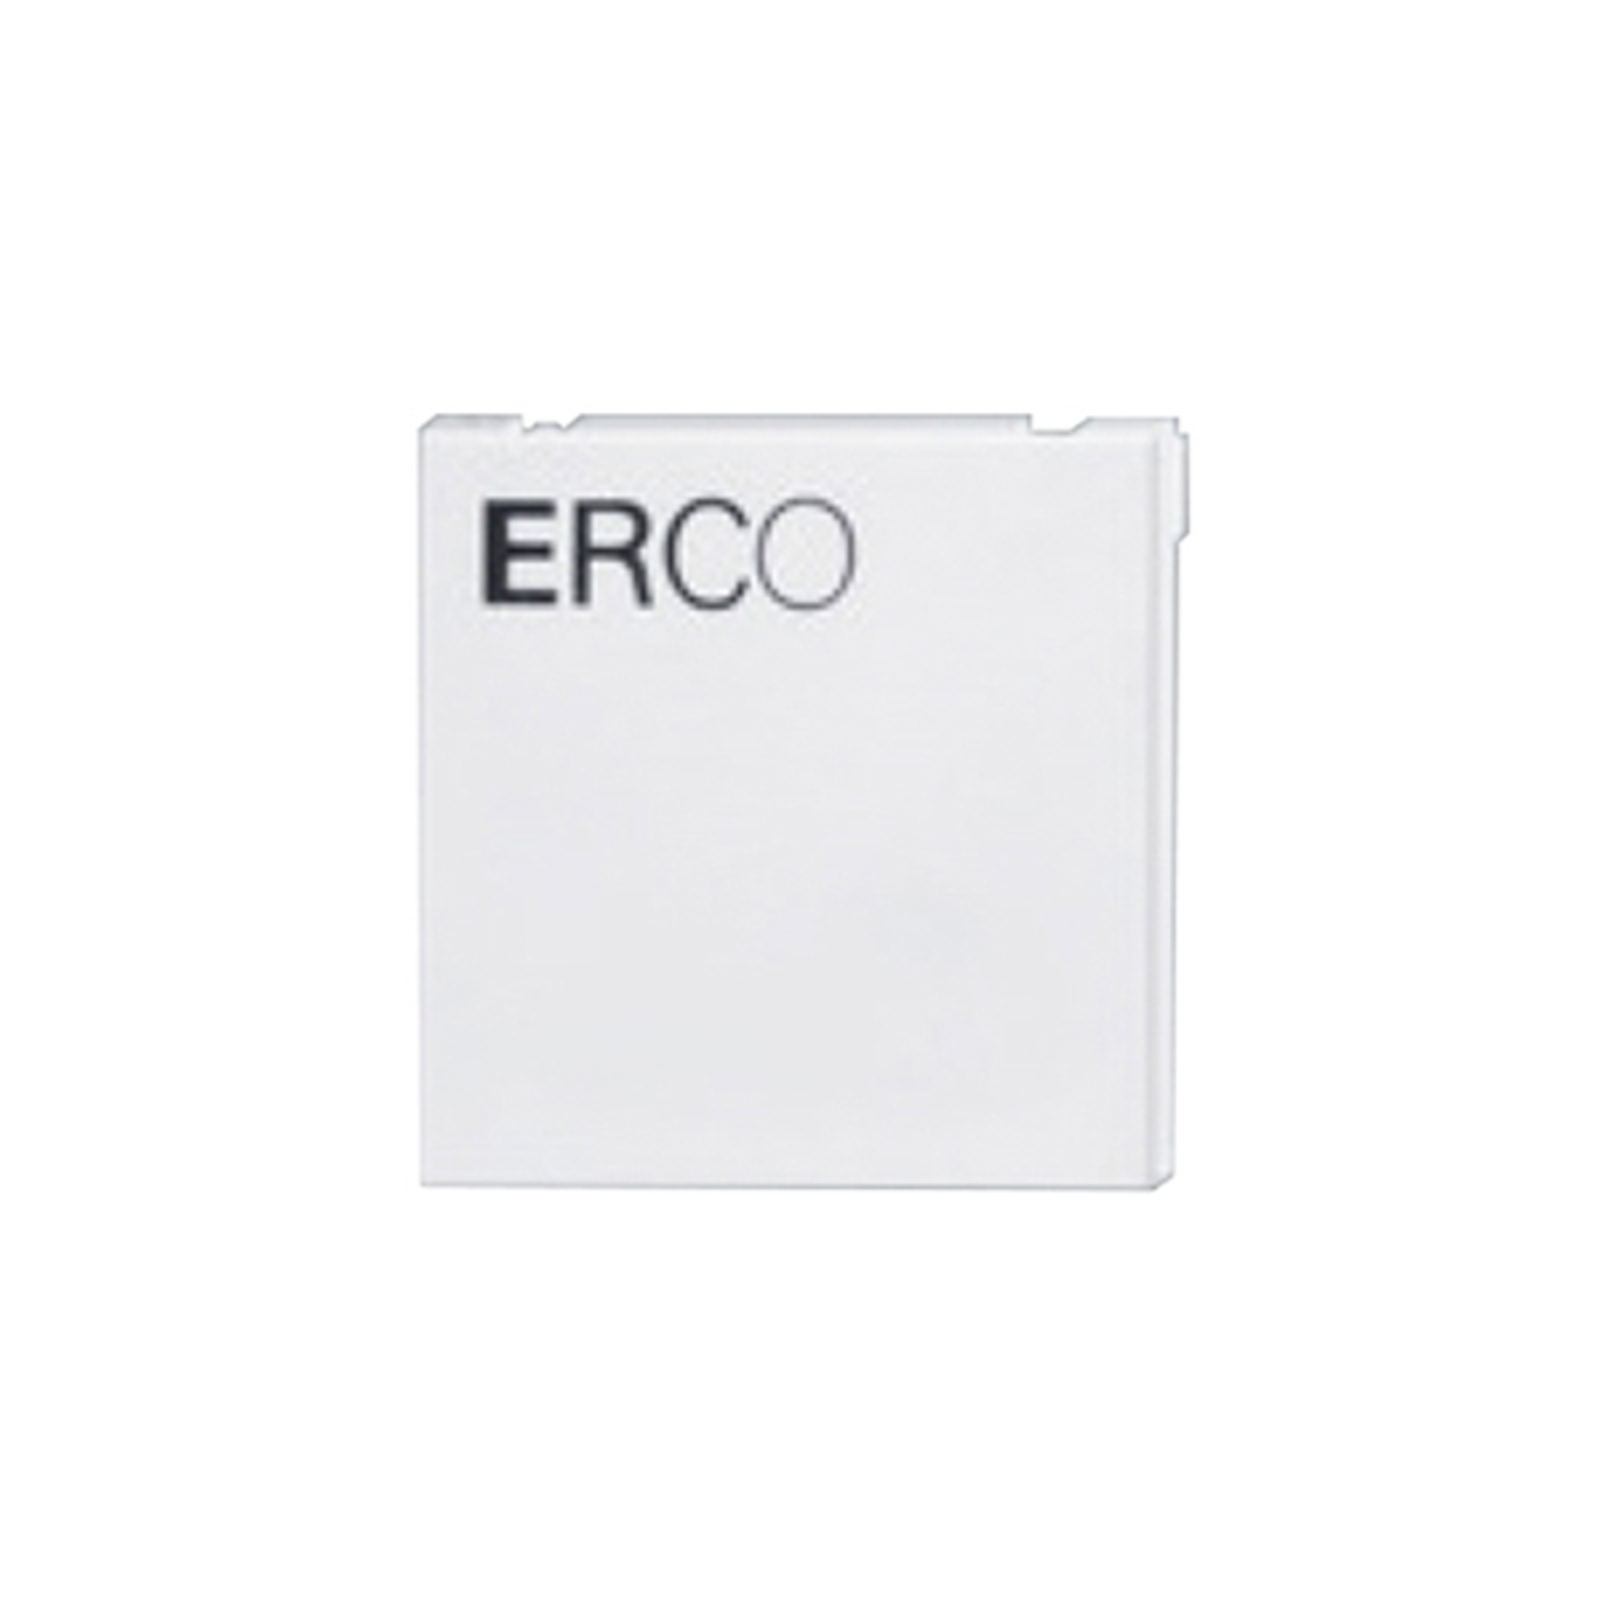 ERCO sluttplate for 3-fase skinne, hvit